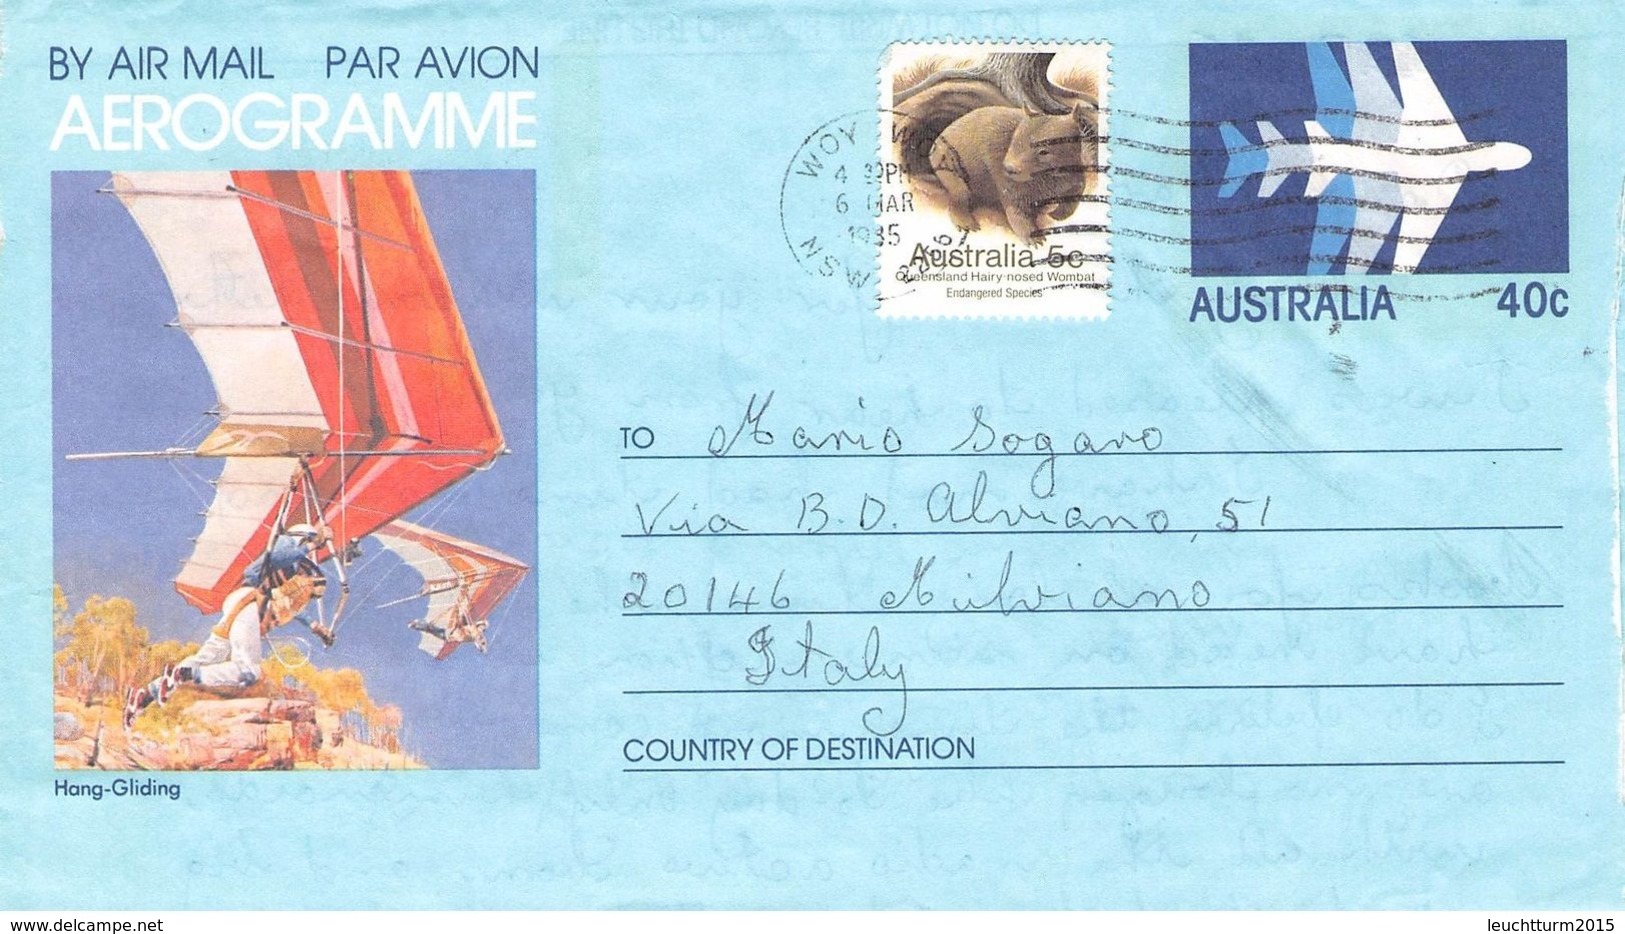 AUSTRALIA - AEROGRAMME 1985 - ITALY /ak996 - Aerogramme